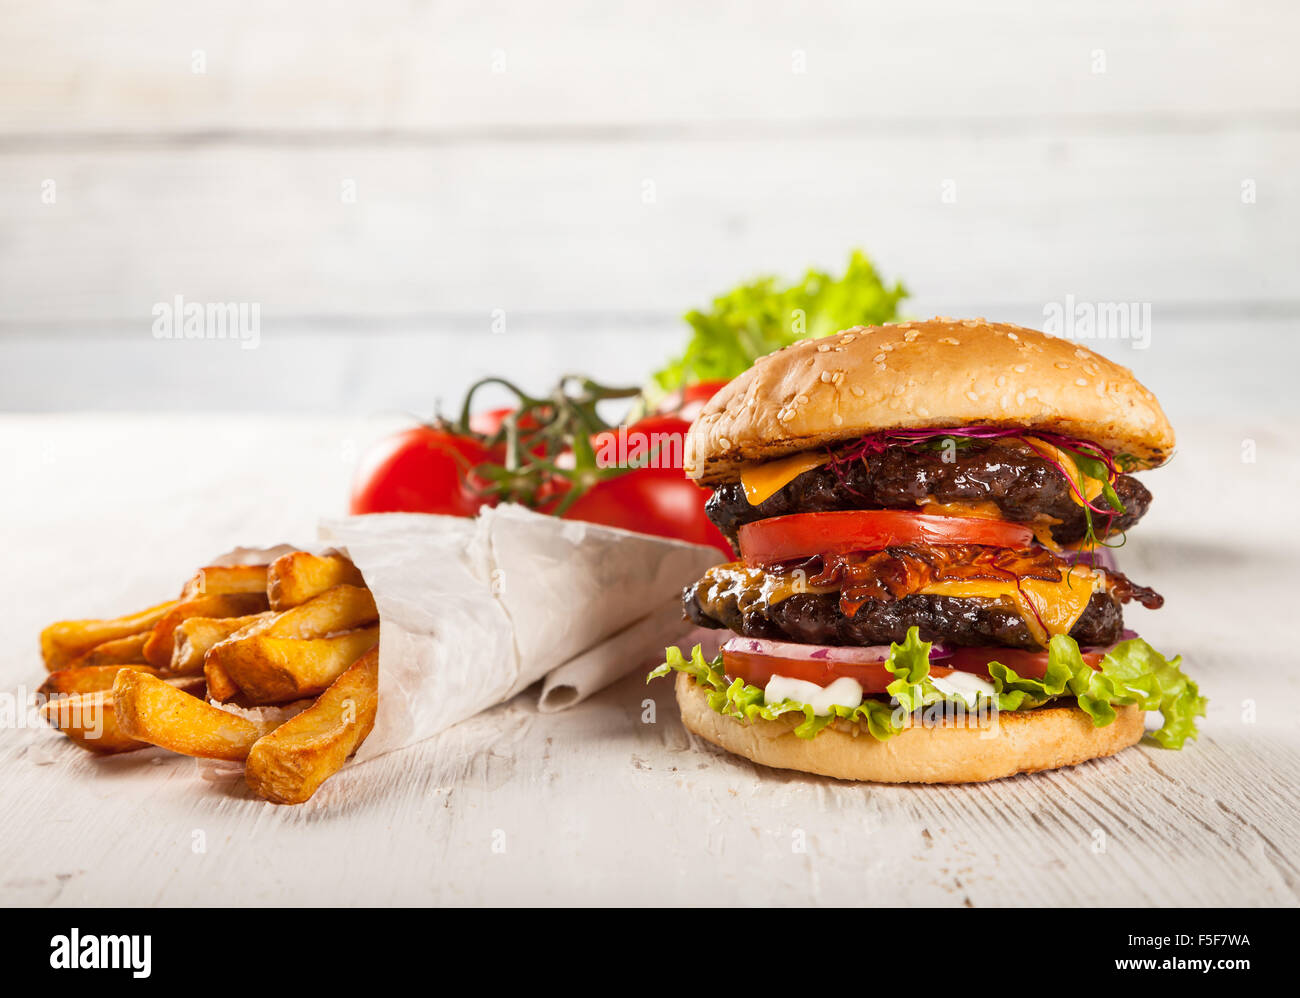 Délicieux hamburger sur bois Banque D'Images